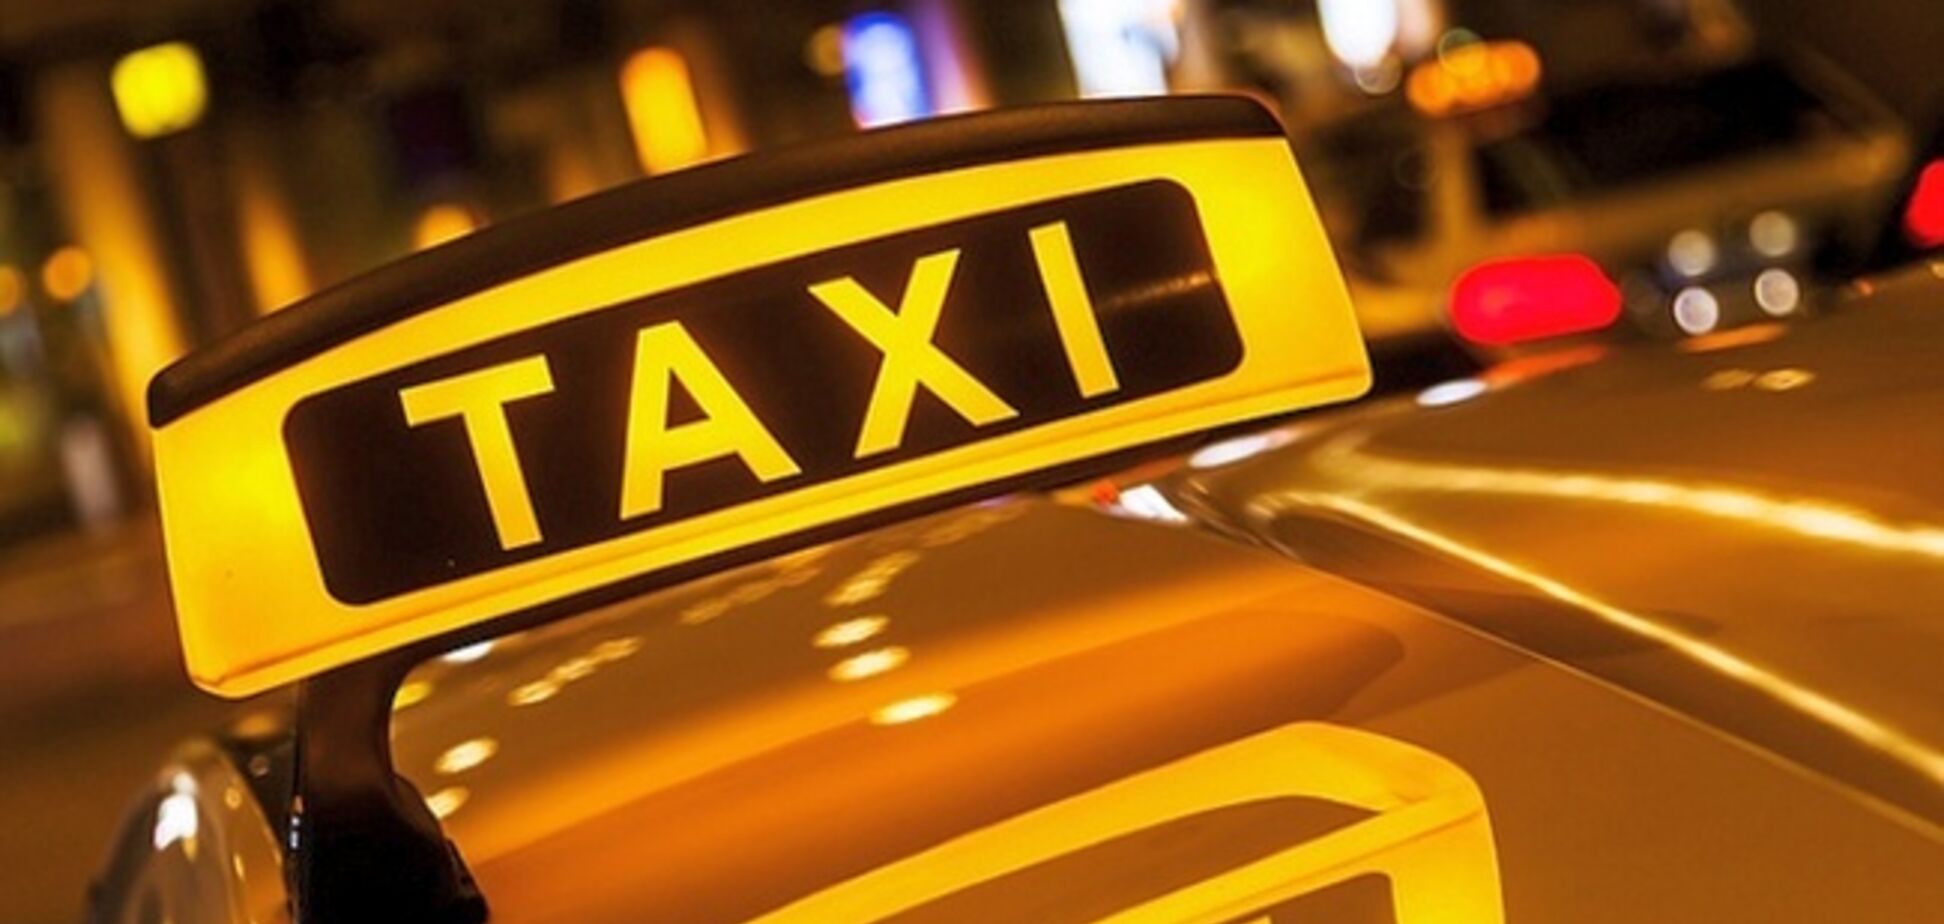 Вище в 3 рази! У Києві через транспортний колапс злетіли ціни на таксі